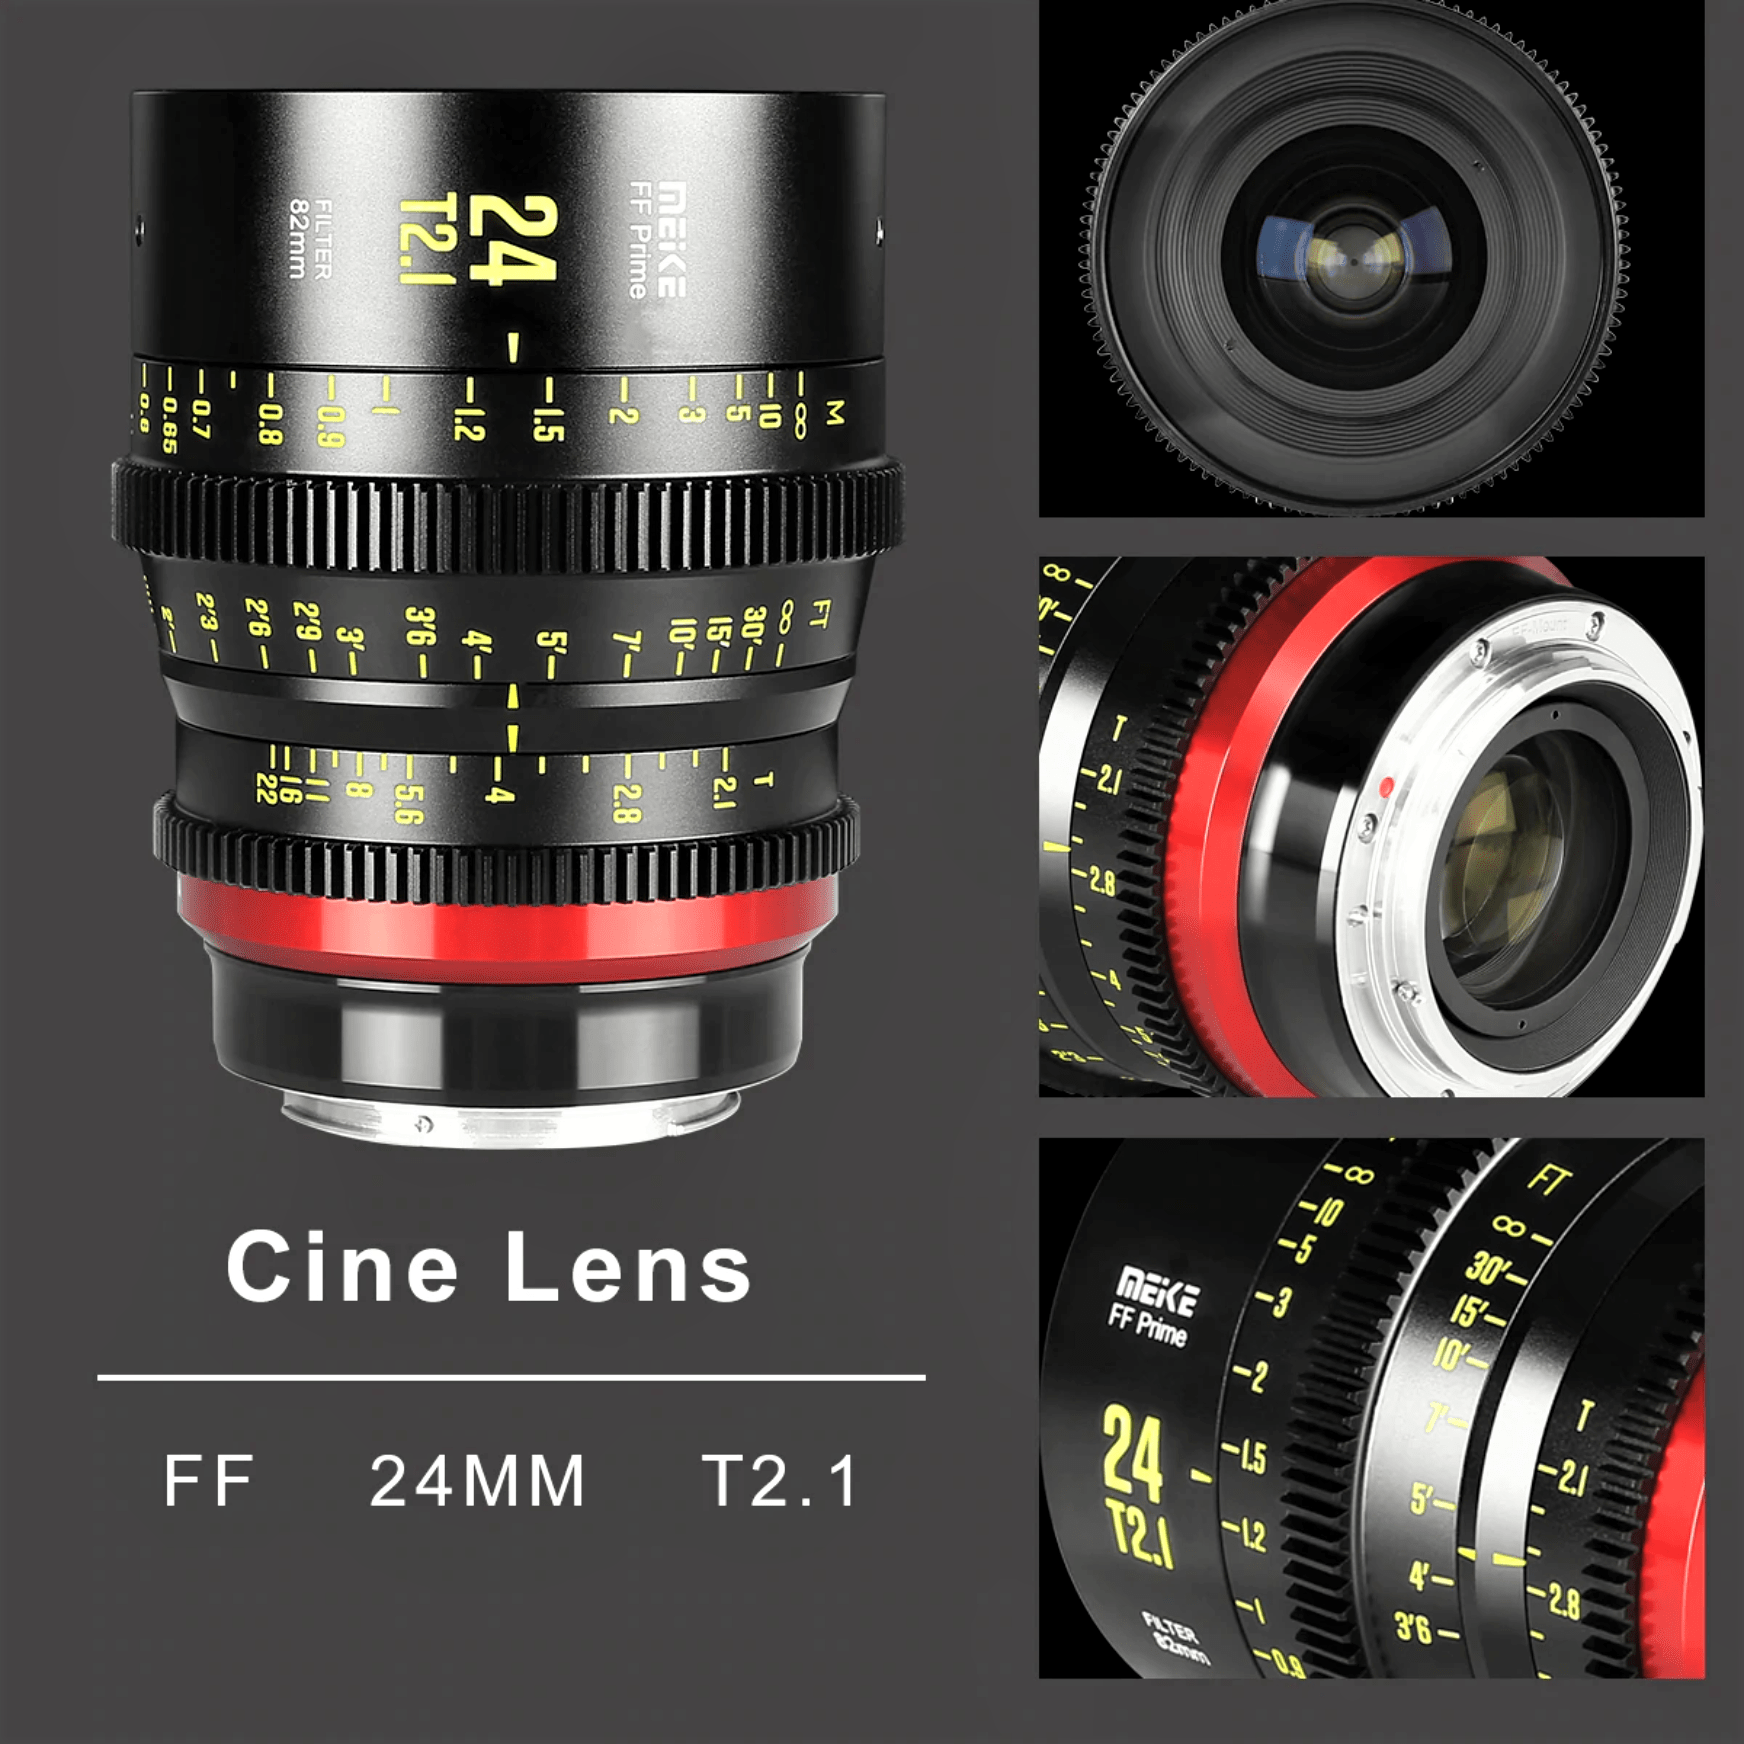 Meike Cinema Full Frame Cinema Prime 24mm T2.1 Lens (L Mount) in Different Perspectives